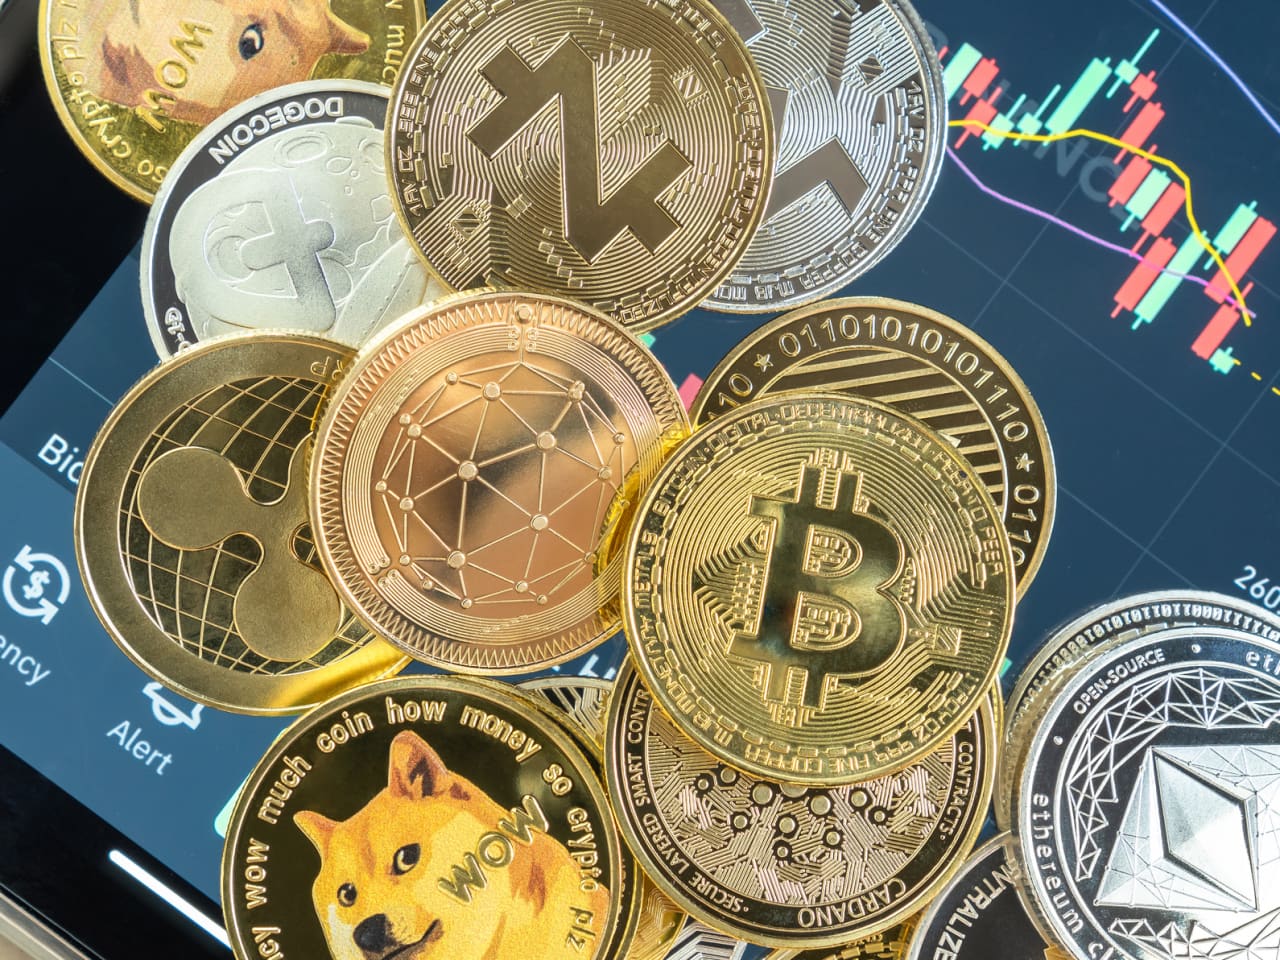 über trade republic in bitcoin investieren kryptoinvestition 2021